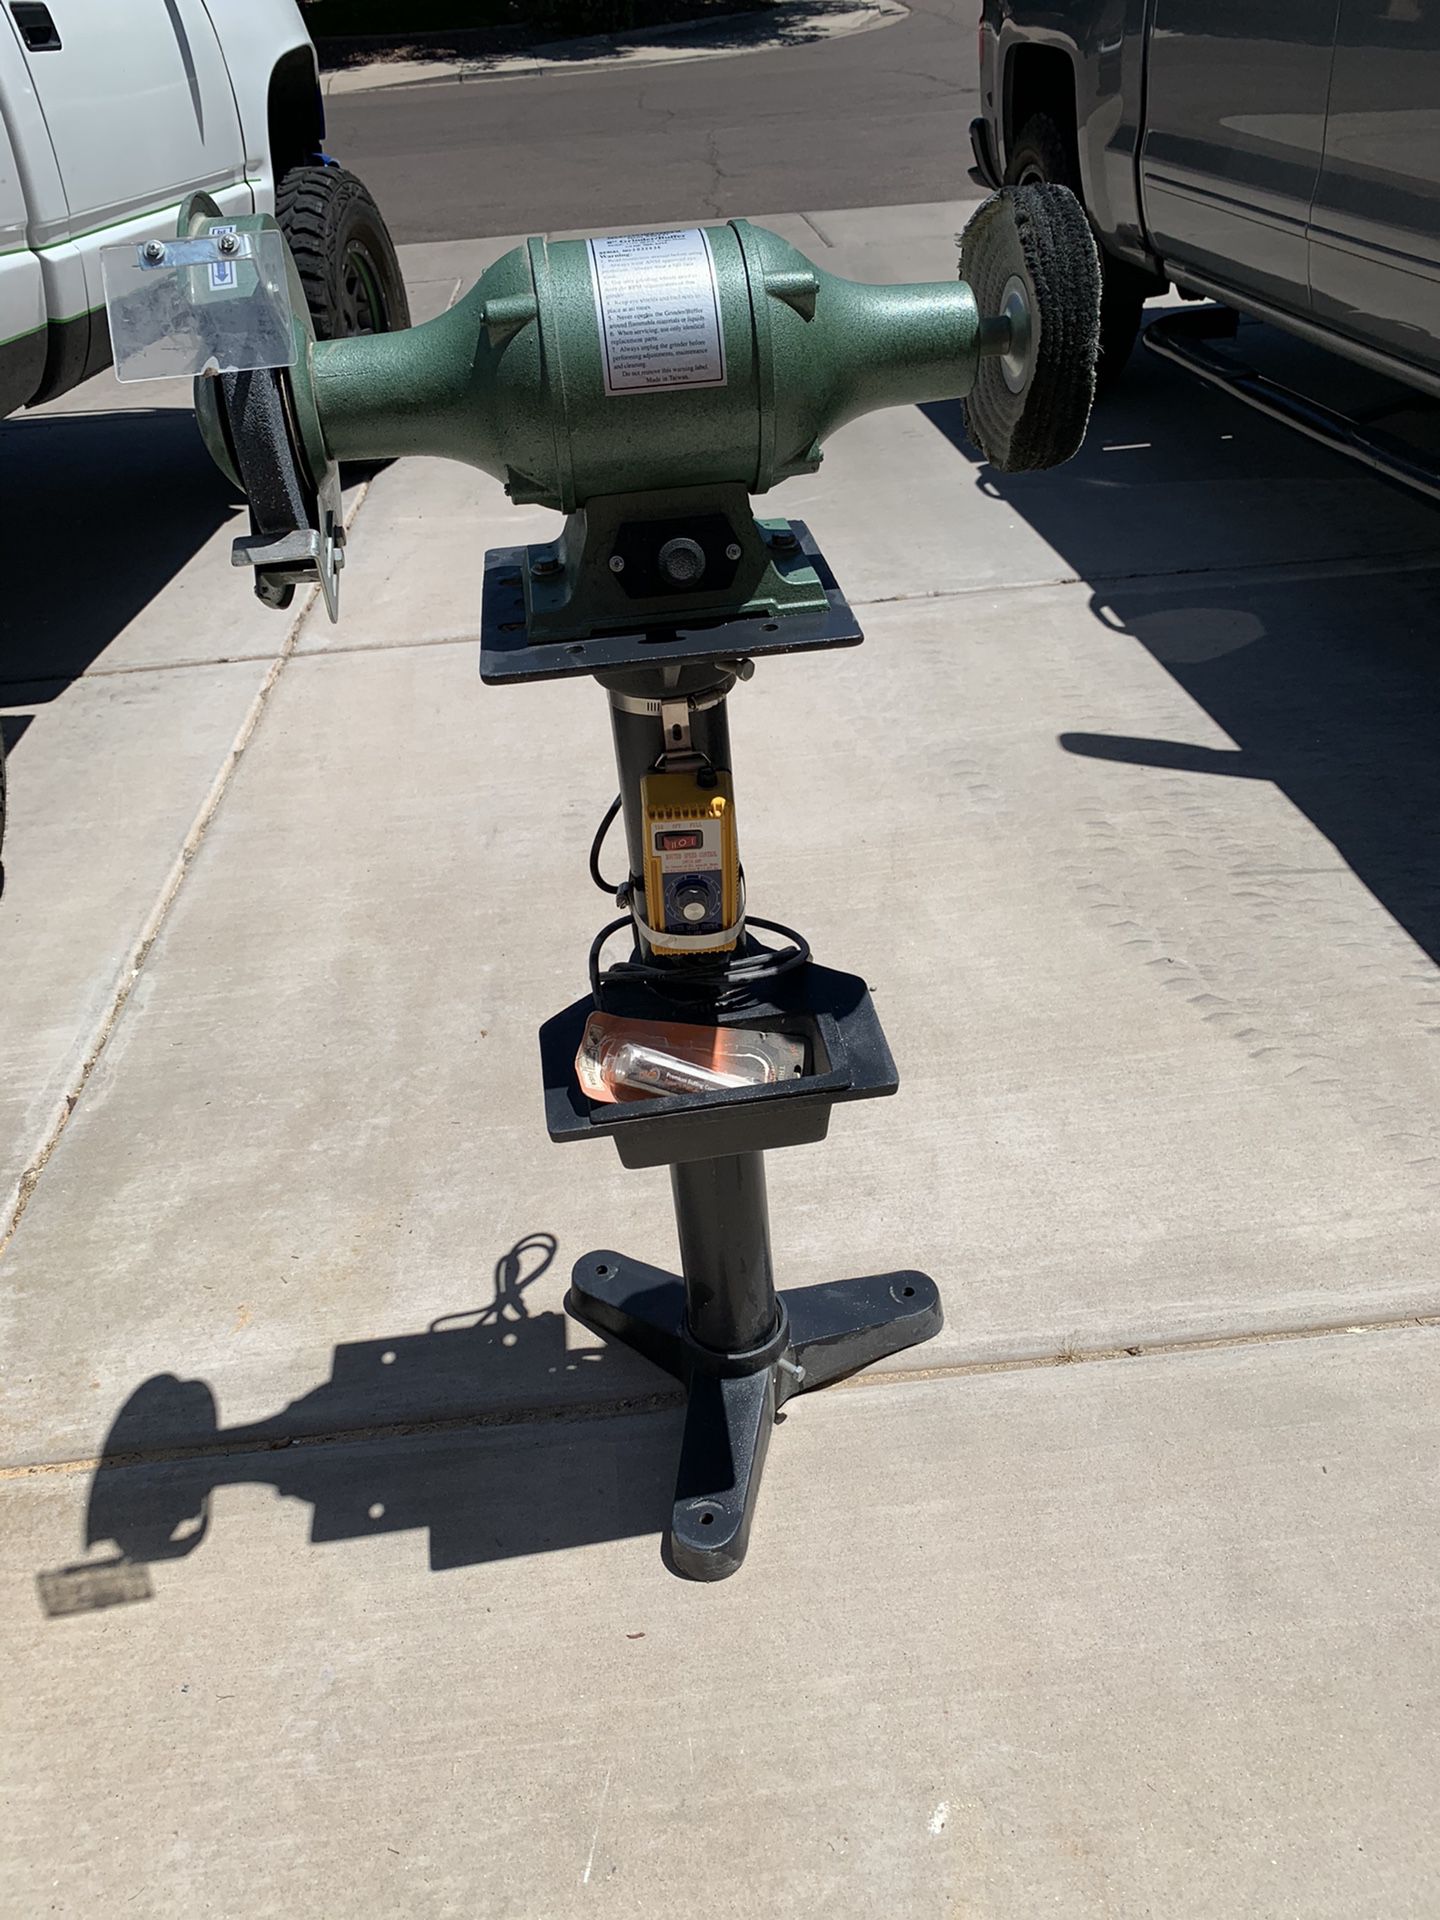 Harbor Freight grinder/polisher